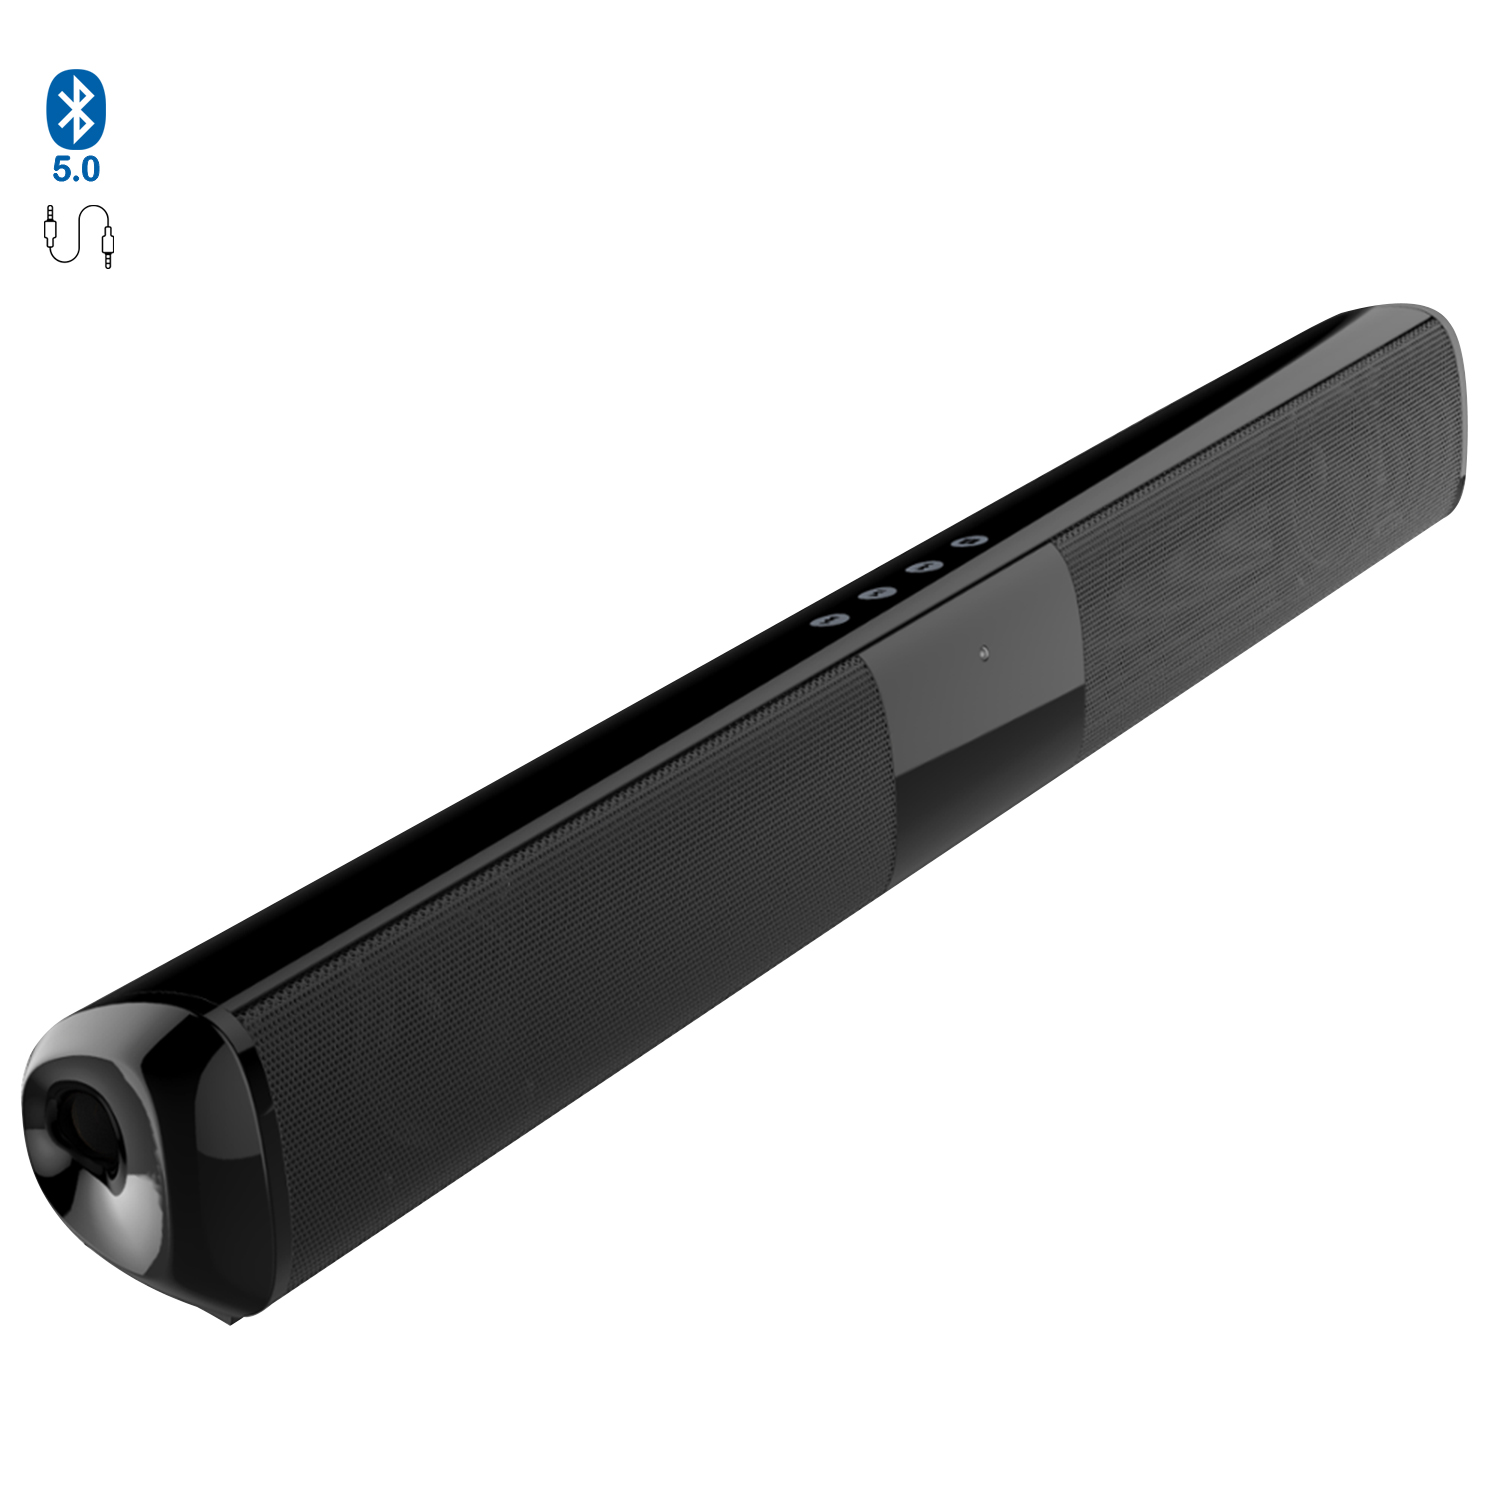 DAM. Barra de sonido 2.0 T90 Bluetooth 5.0. Entrada RCA, auxiliar, Micro SD  y radio FM. Batería incorporada de 1800mAh.Medidas : 50x5x6cm.